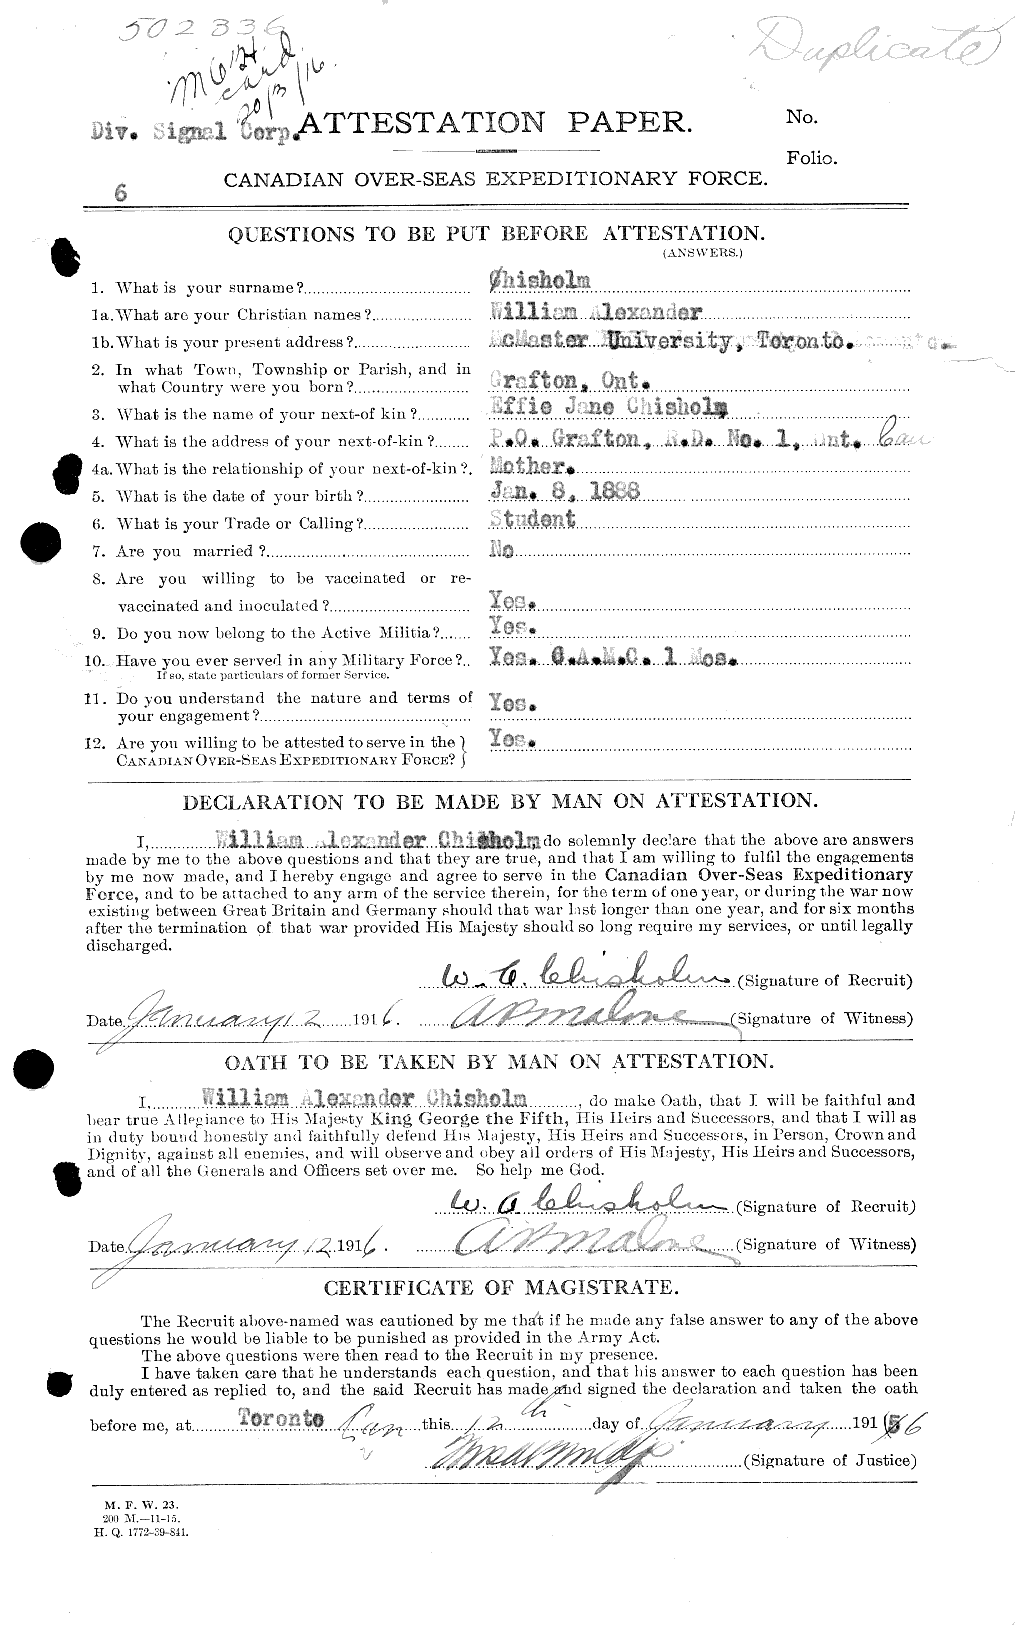 Dossiers du Personnel de la Première Guerre mondiale - CEC 020359a